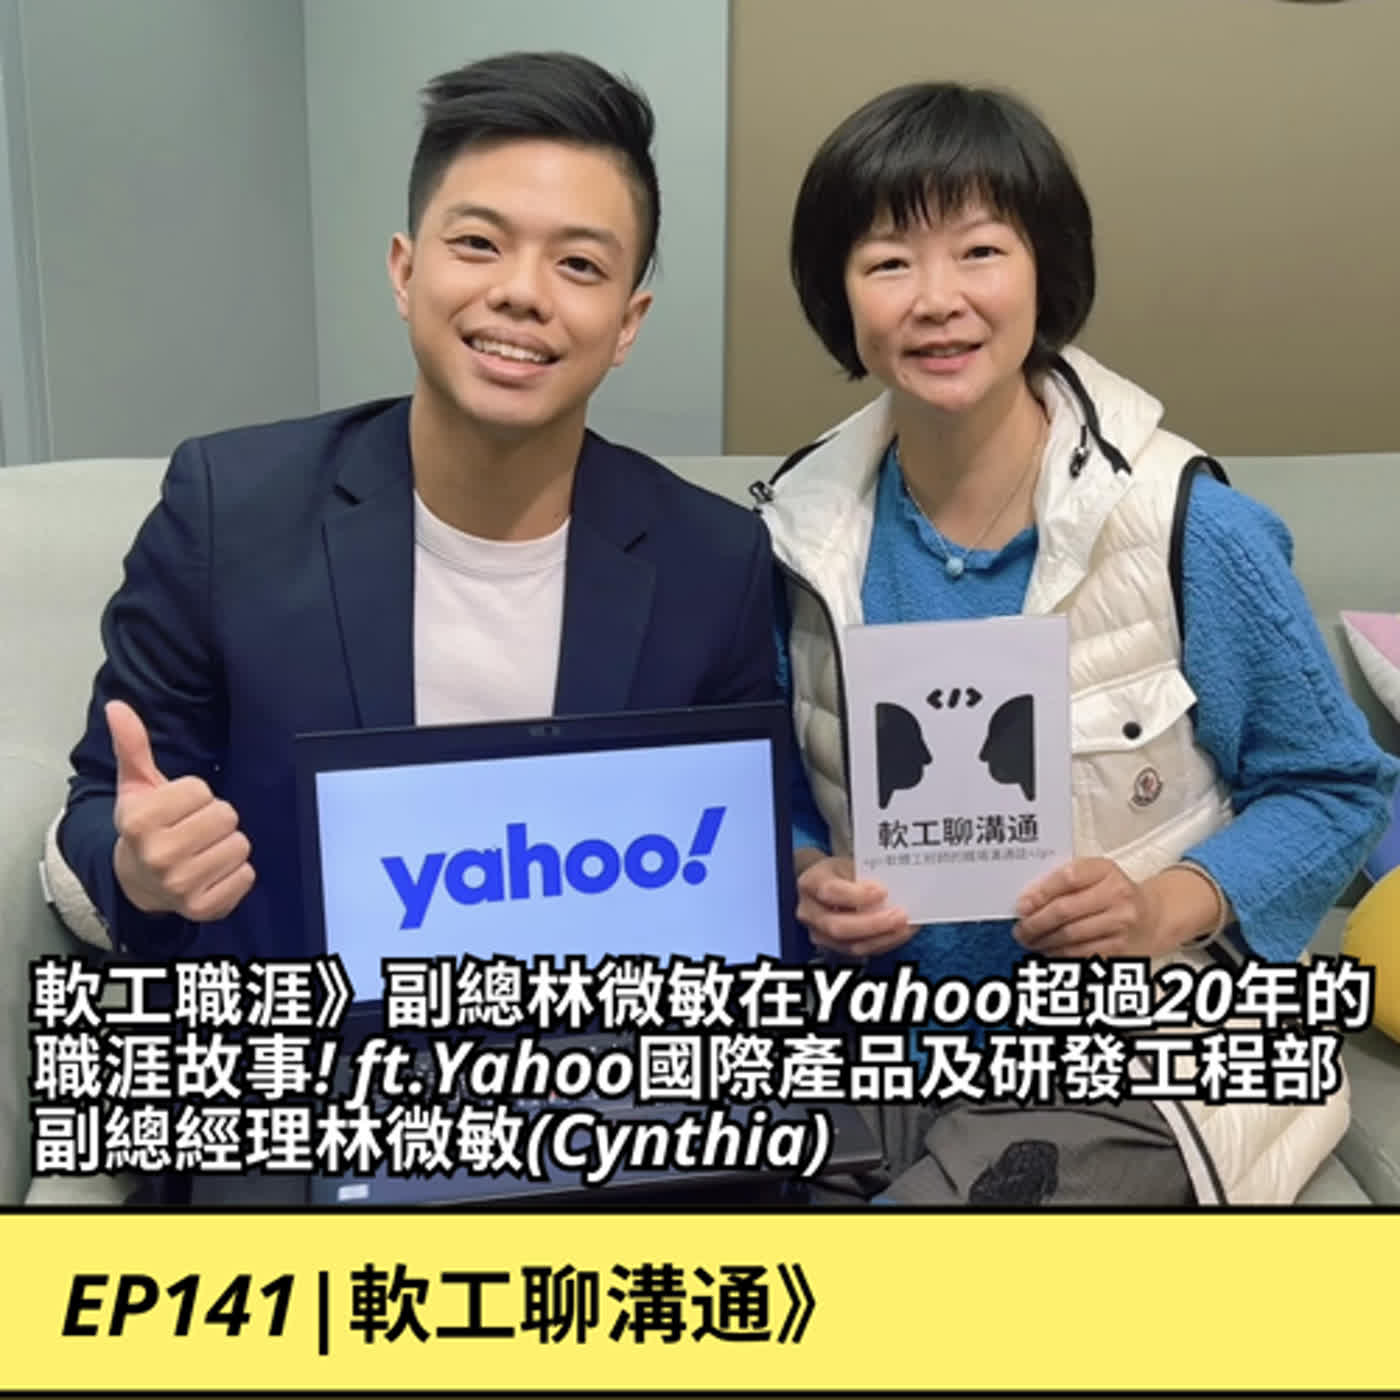 EP141|軟工職涯》副總林微敏在Yahoo超過20年的職涯故事! ft.Yahoo國際產品及研發工程部副總經理林微敏(Cynthia)